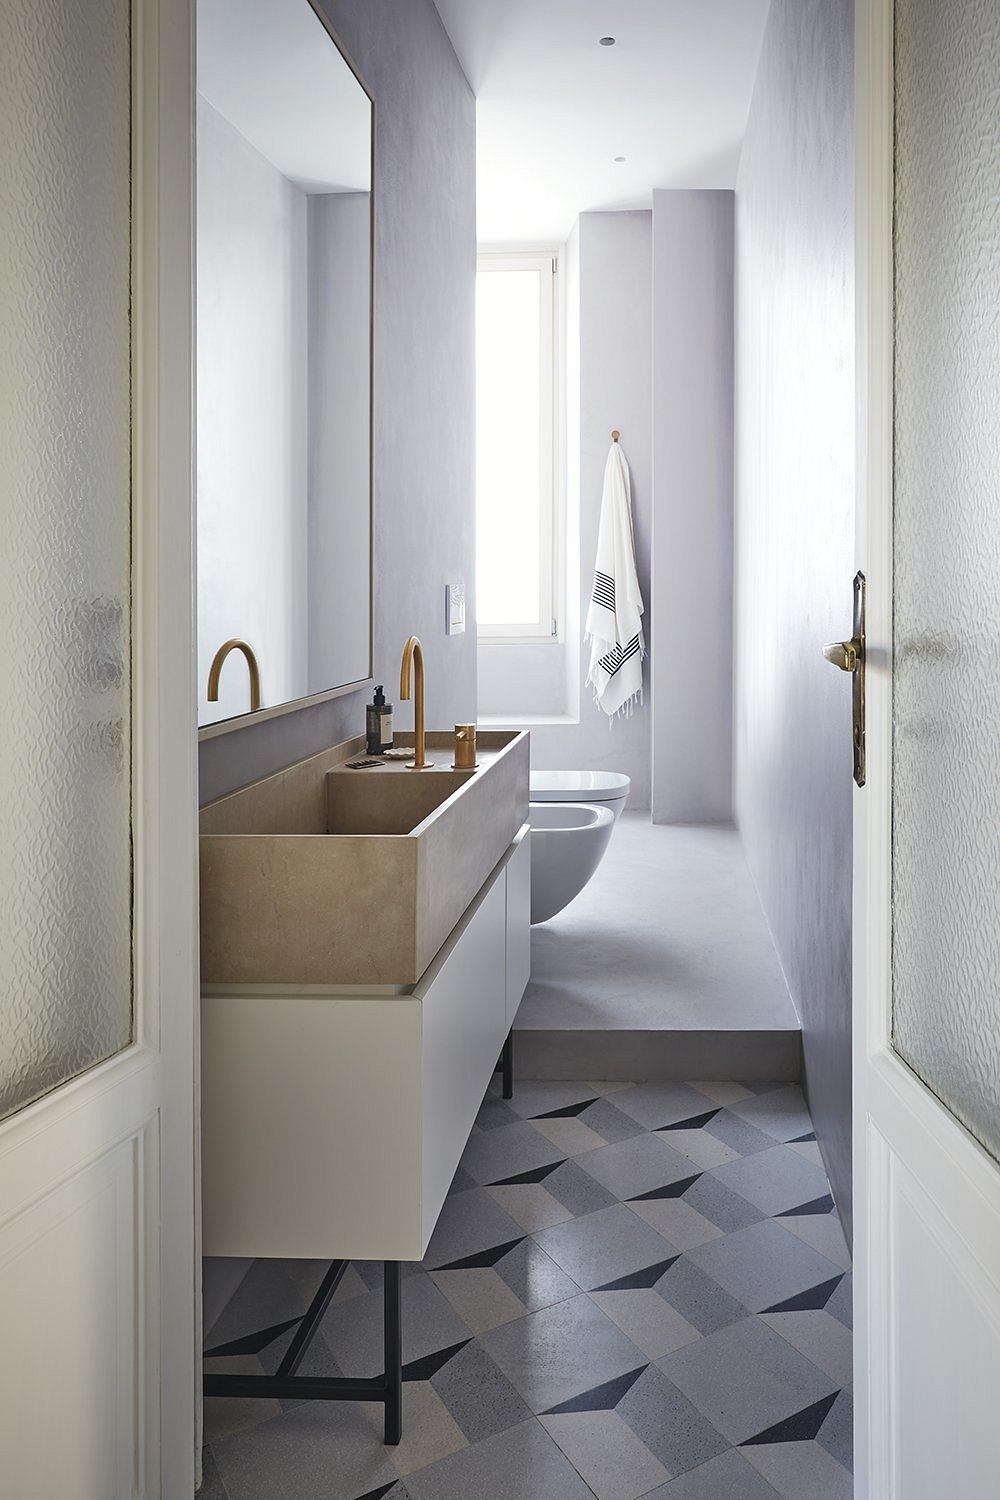 Minimalist bathroom with monochrome tiled floor, built-in vanity, and sleek fixtures.